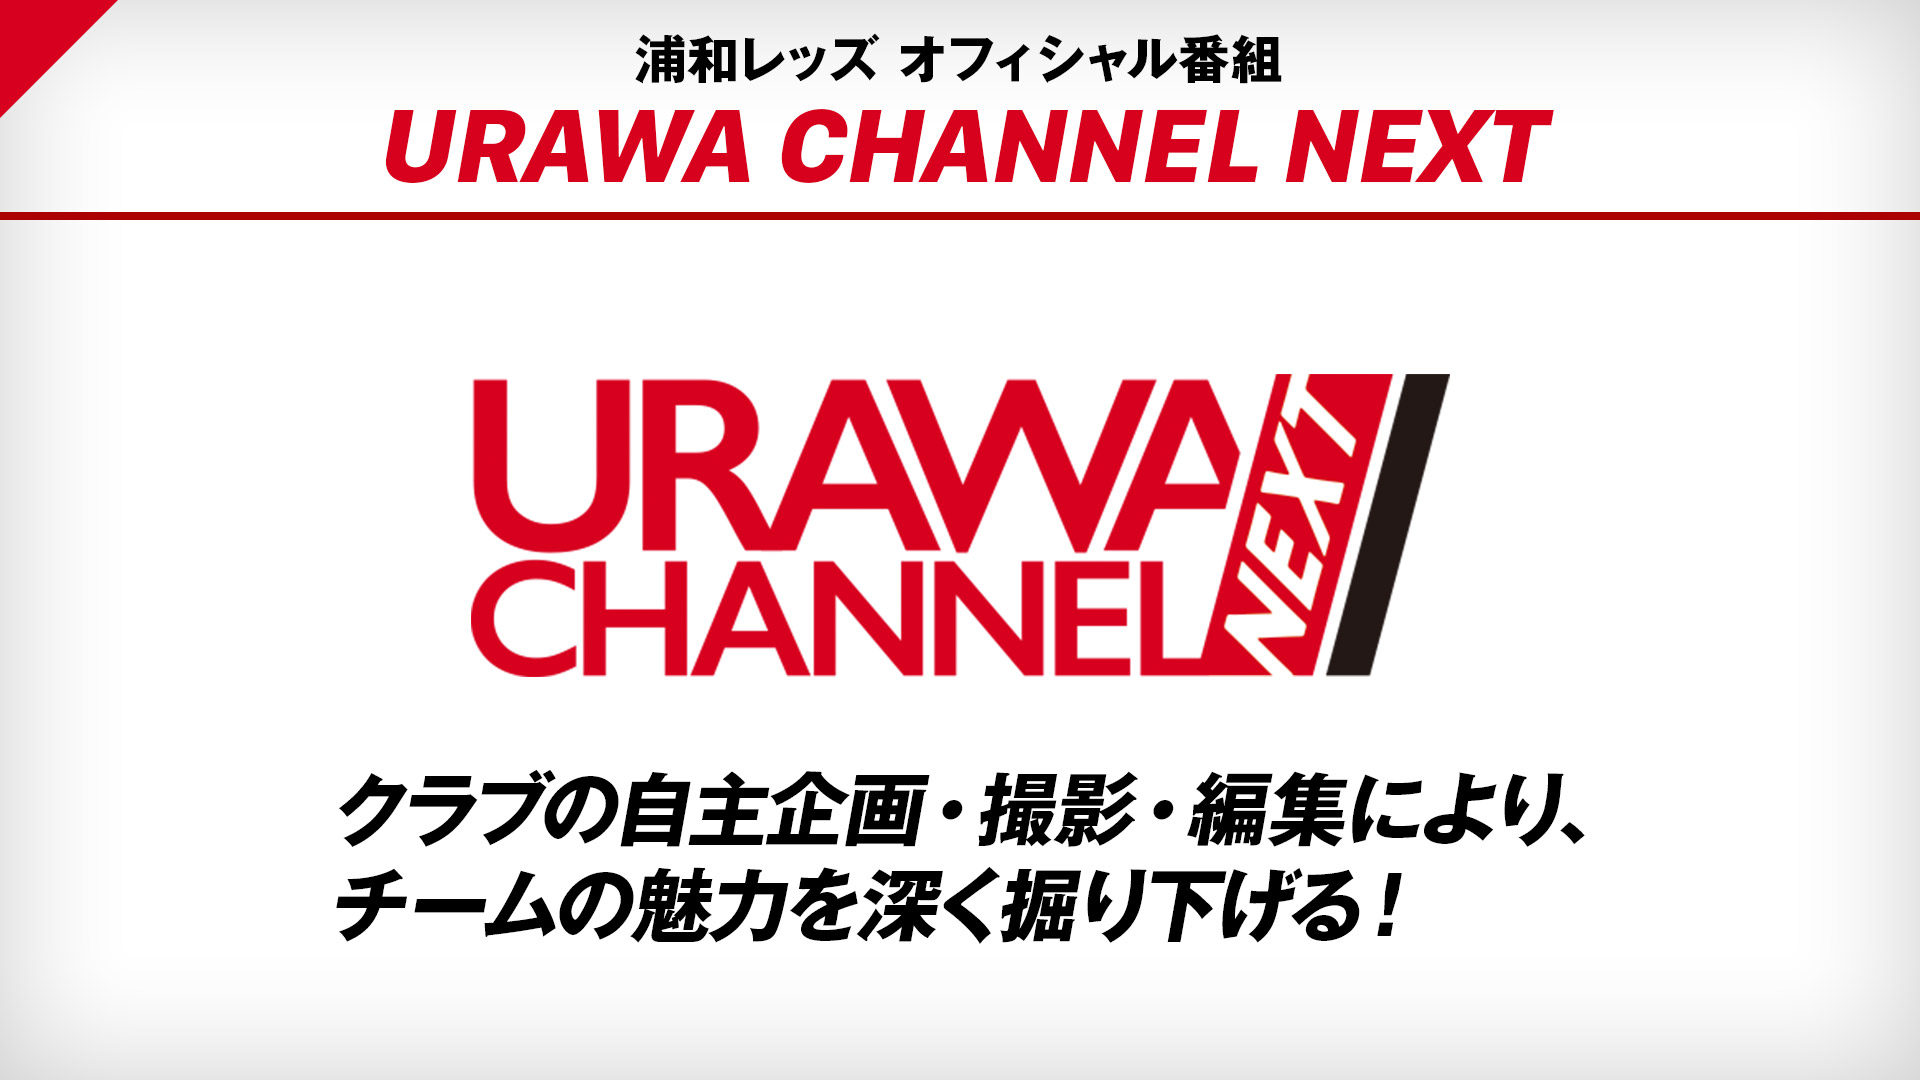 浦和レッズ 応援番組 Urawa Channel Next 番組詳細 オリジナルサッカー番組 スカパー サッカー放送